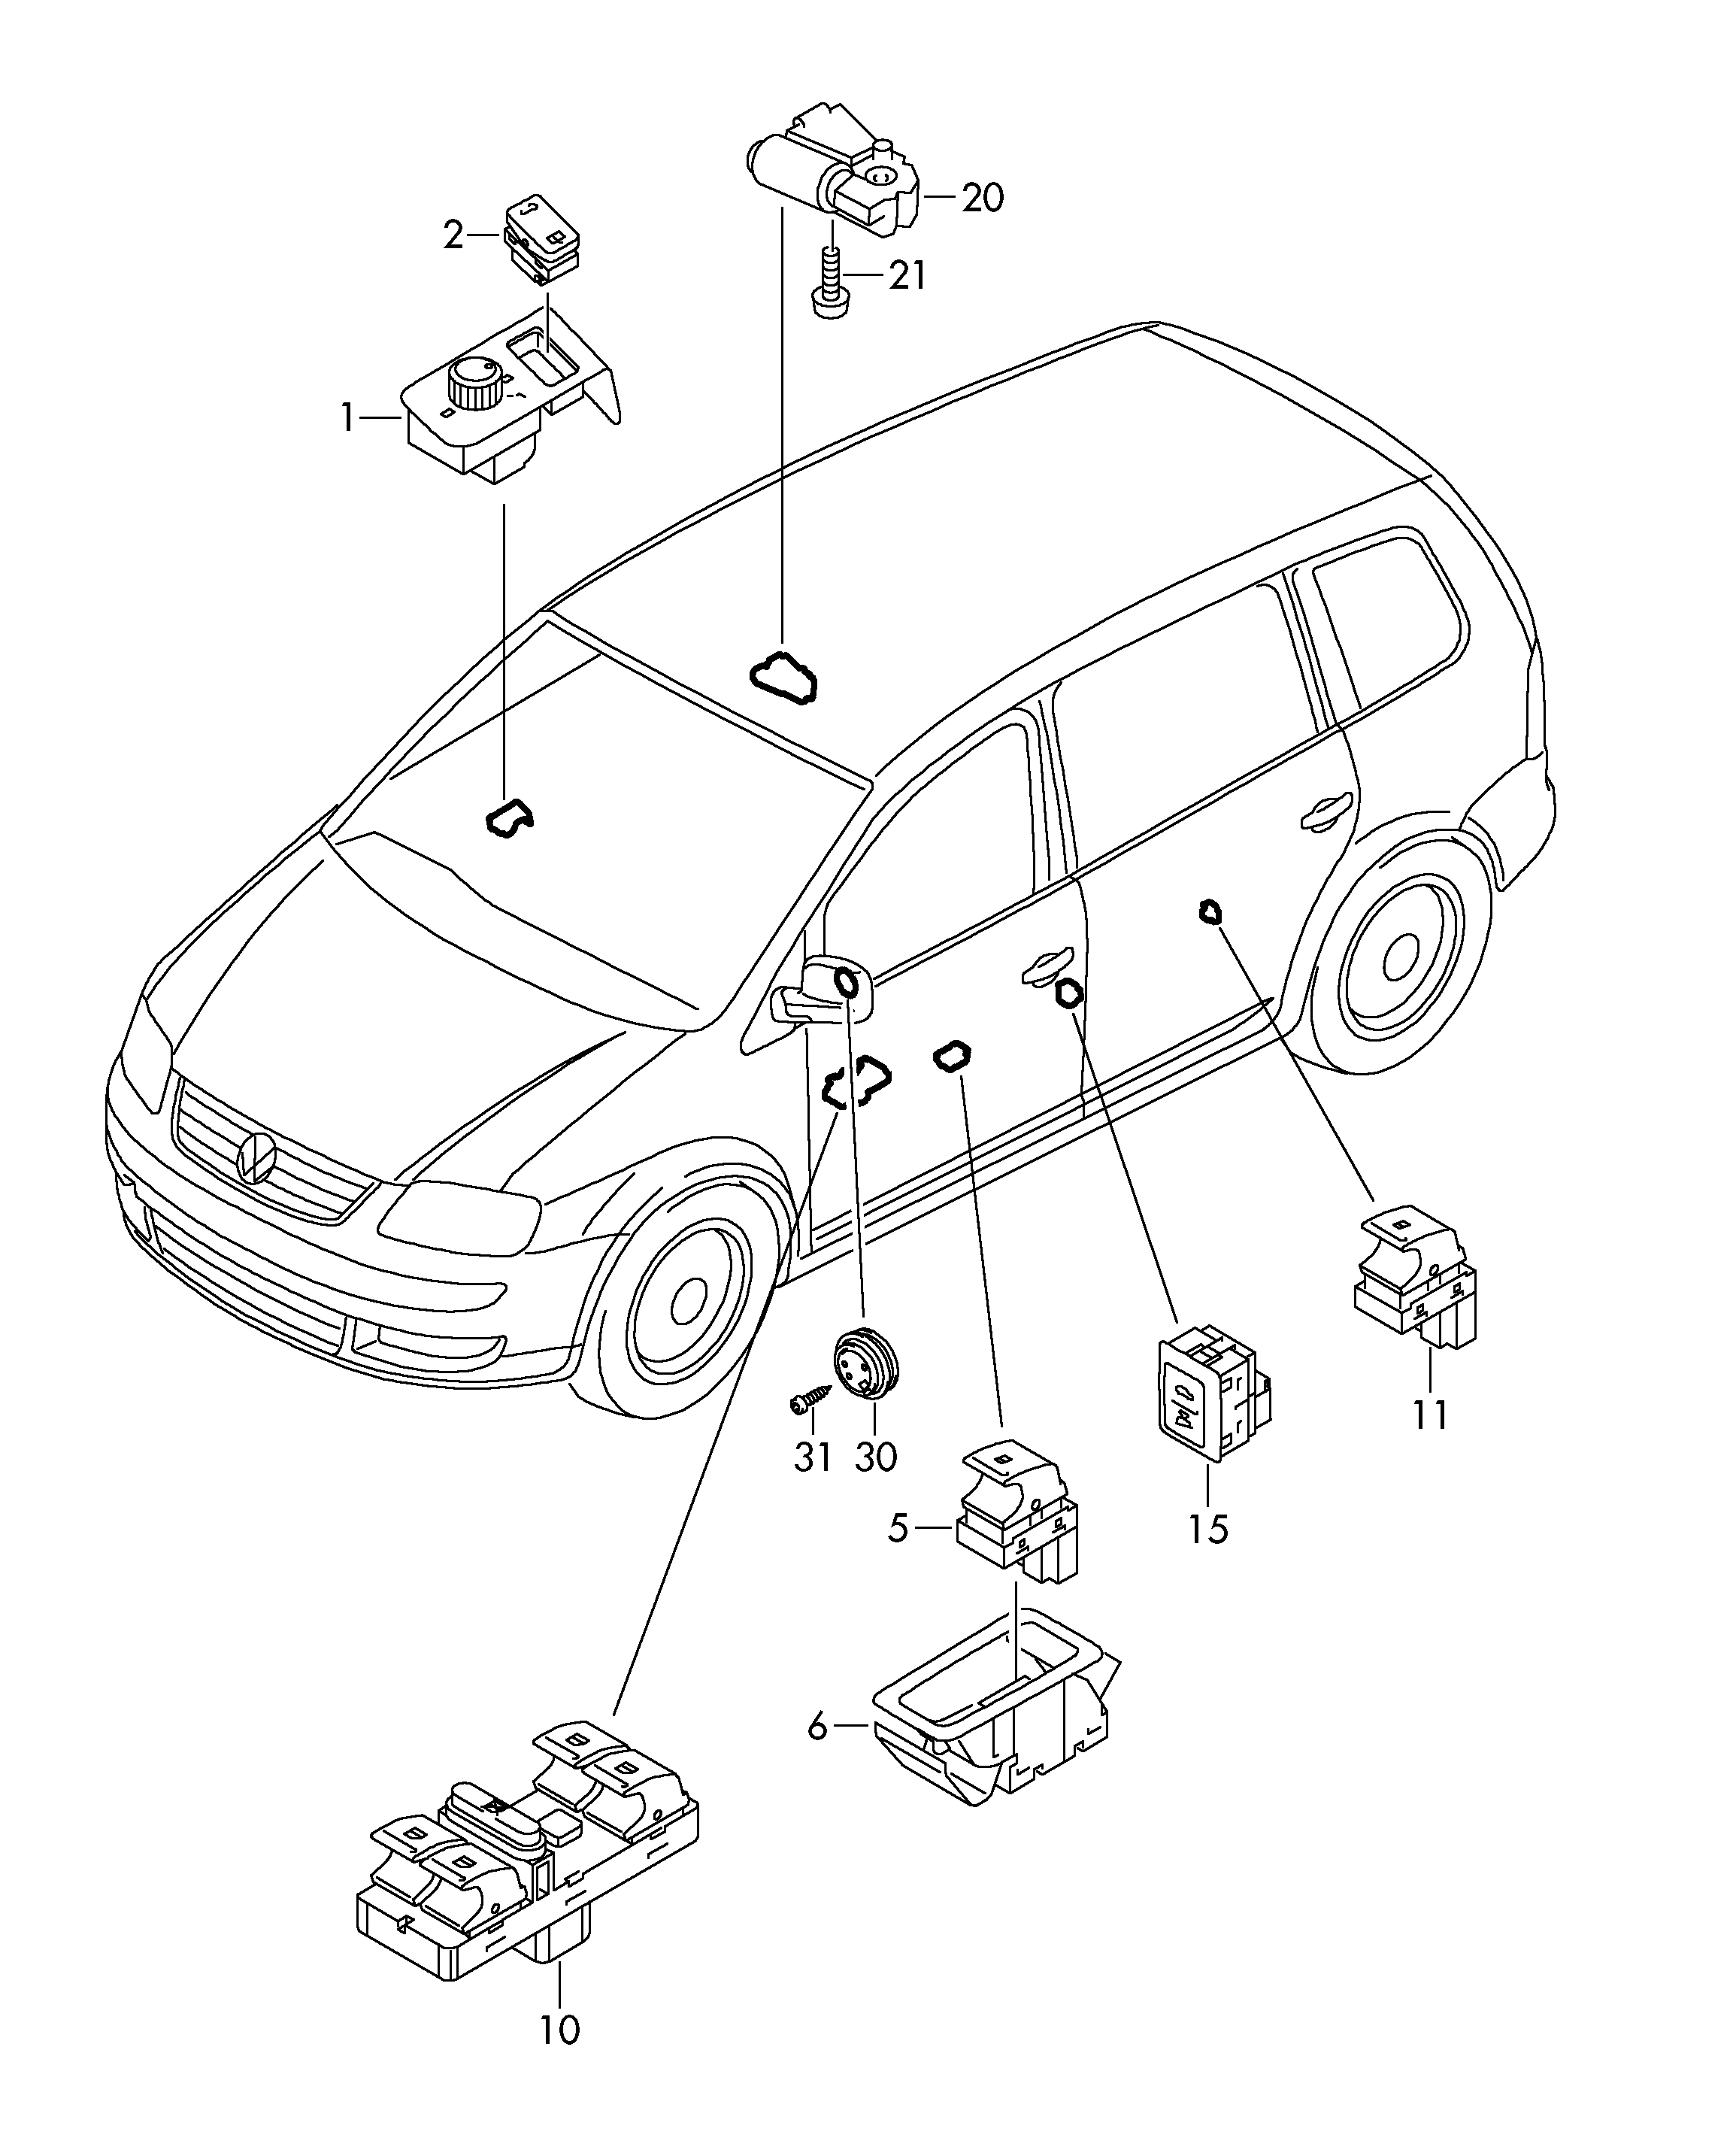 Unite de reglage avec moteur<br>pour retroviseur exterieur  - Touran - tou